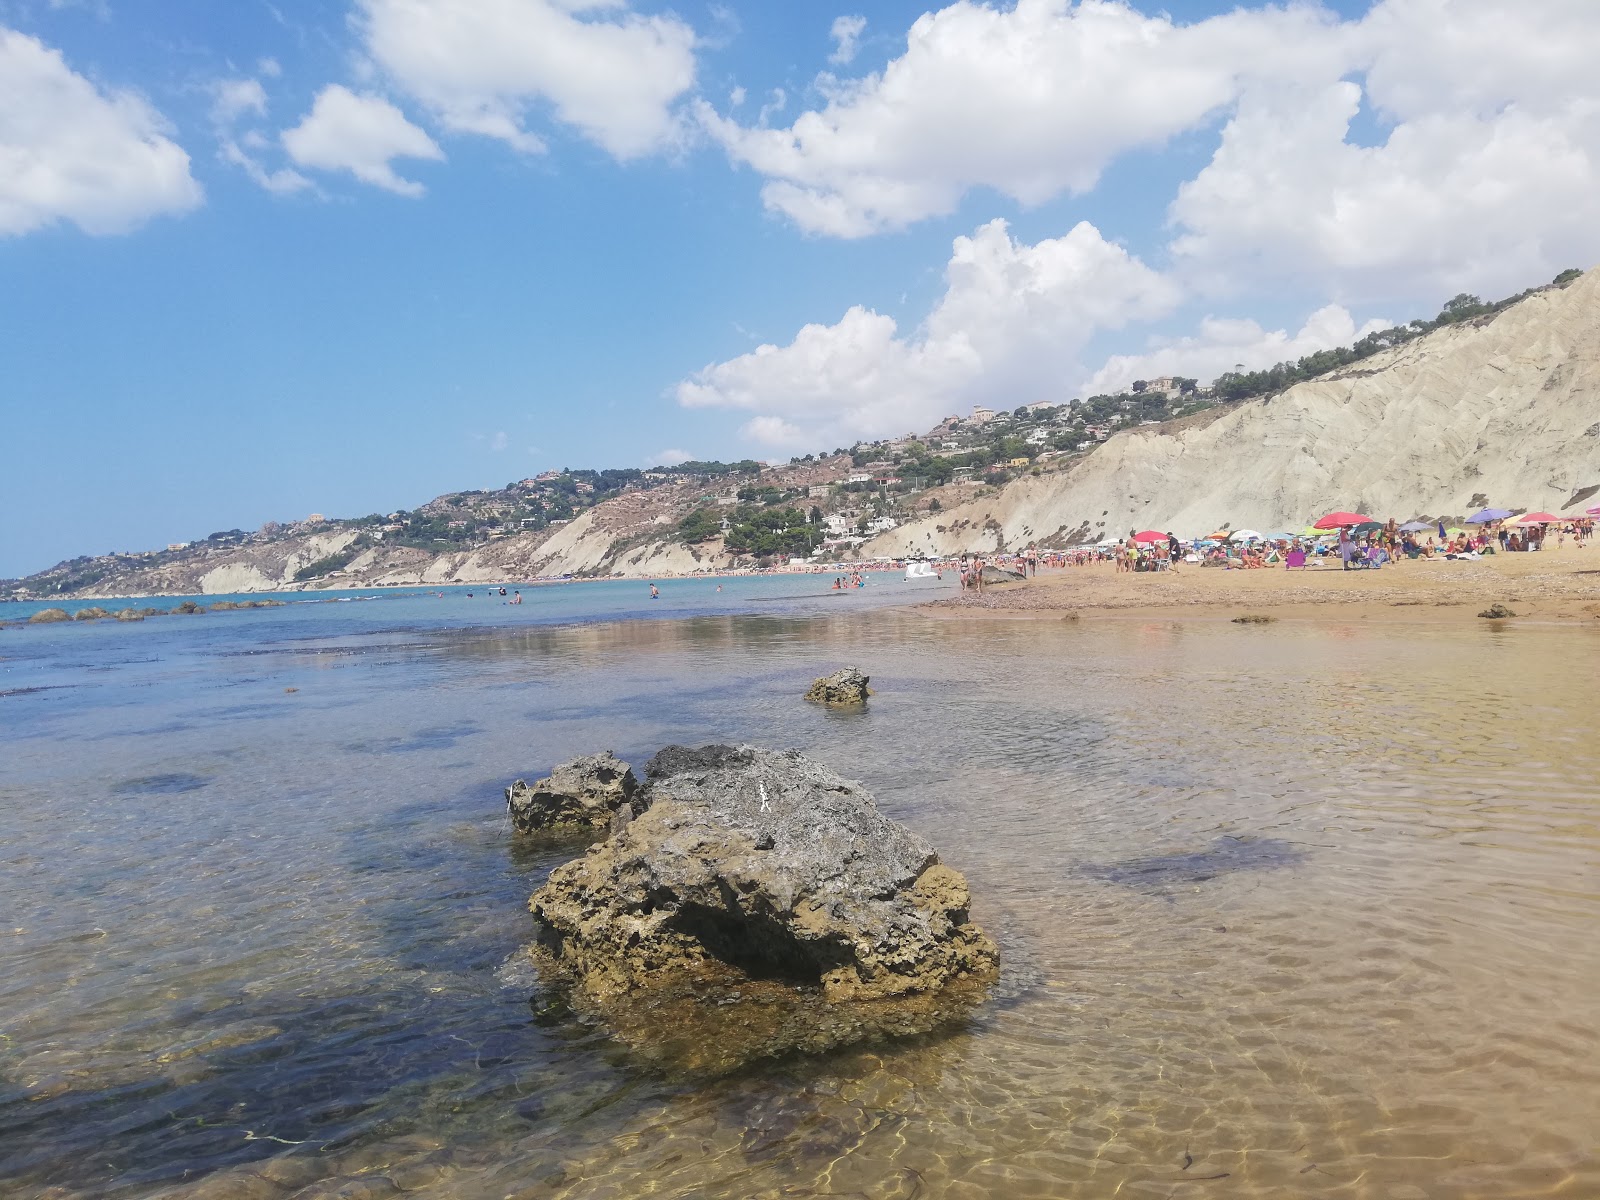 Fotografie cu Marianello beach - recomandat pentru călătorii în familie cu copii